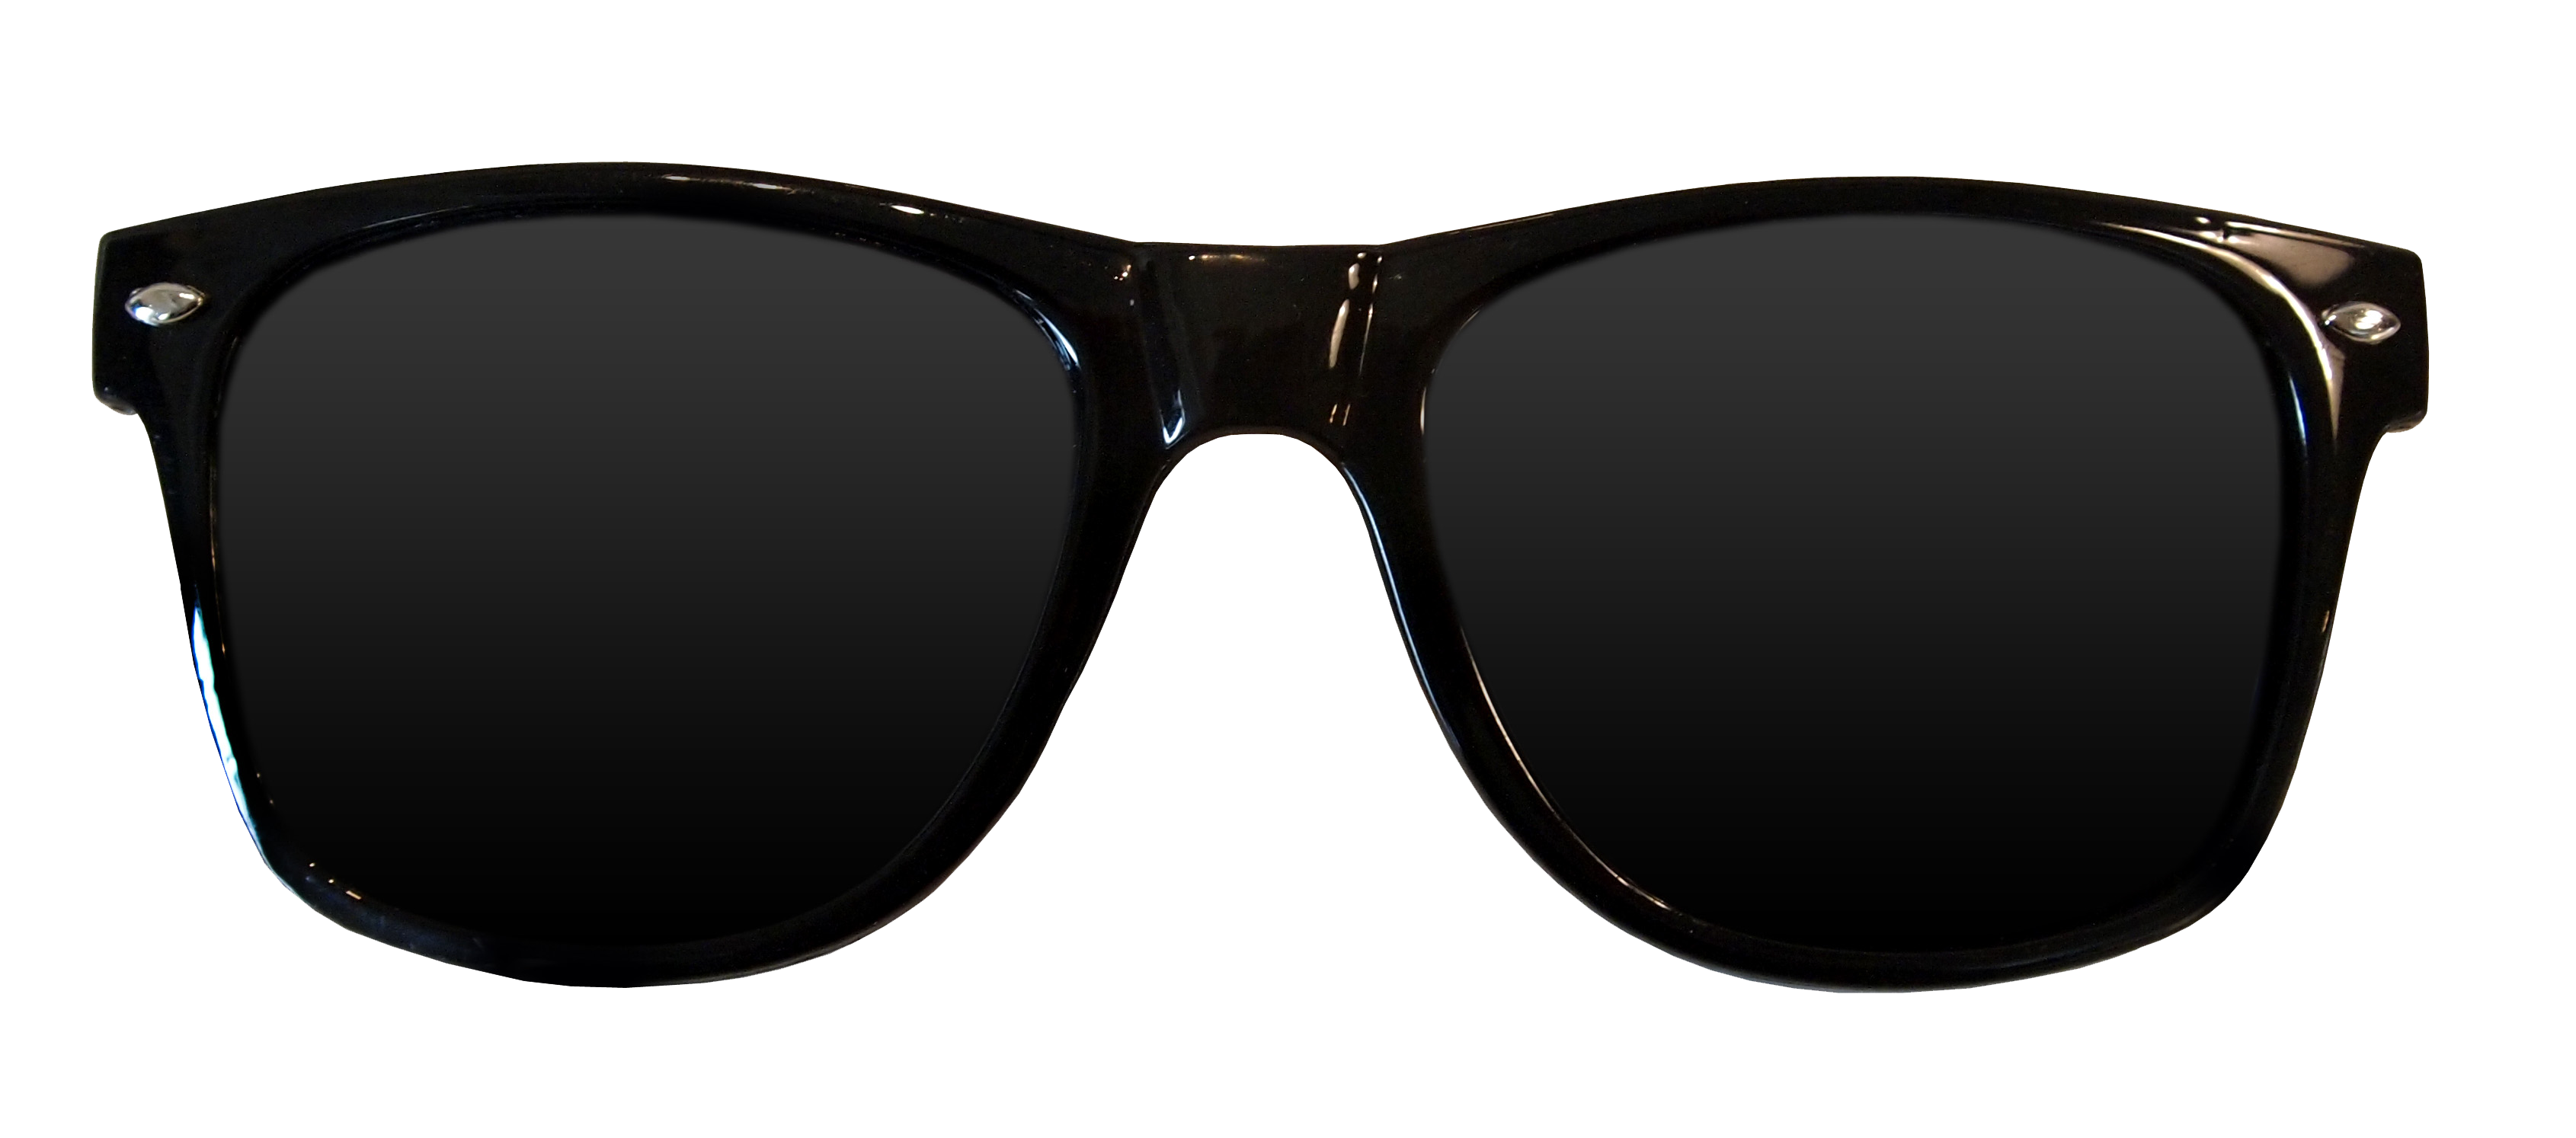 Black Glasses PNG Image Transparent